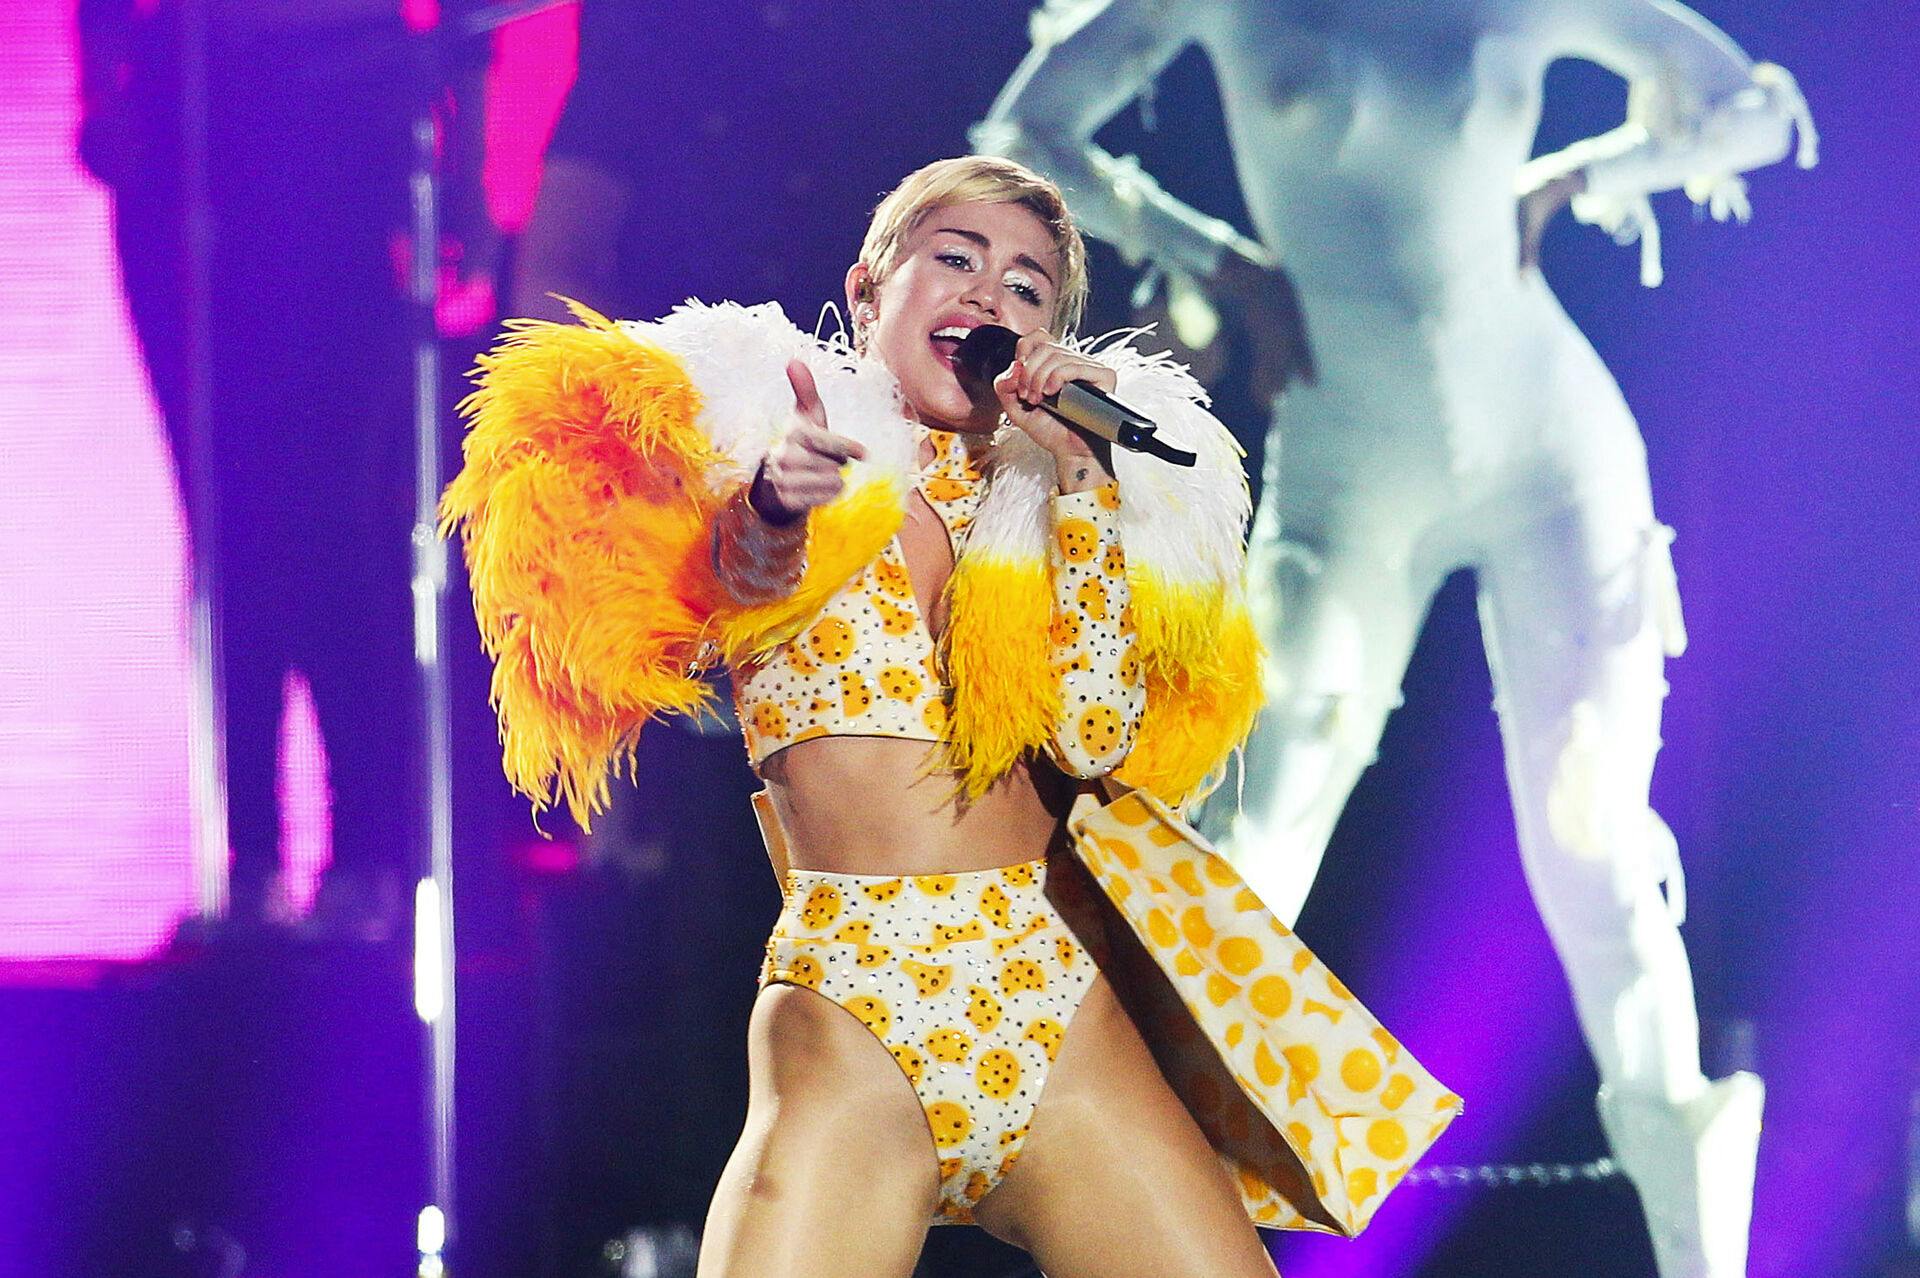 Ingen ville betale for Miley Cyrus' dyre touridéer.